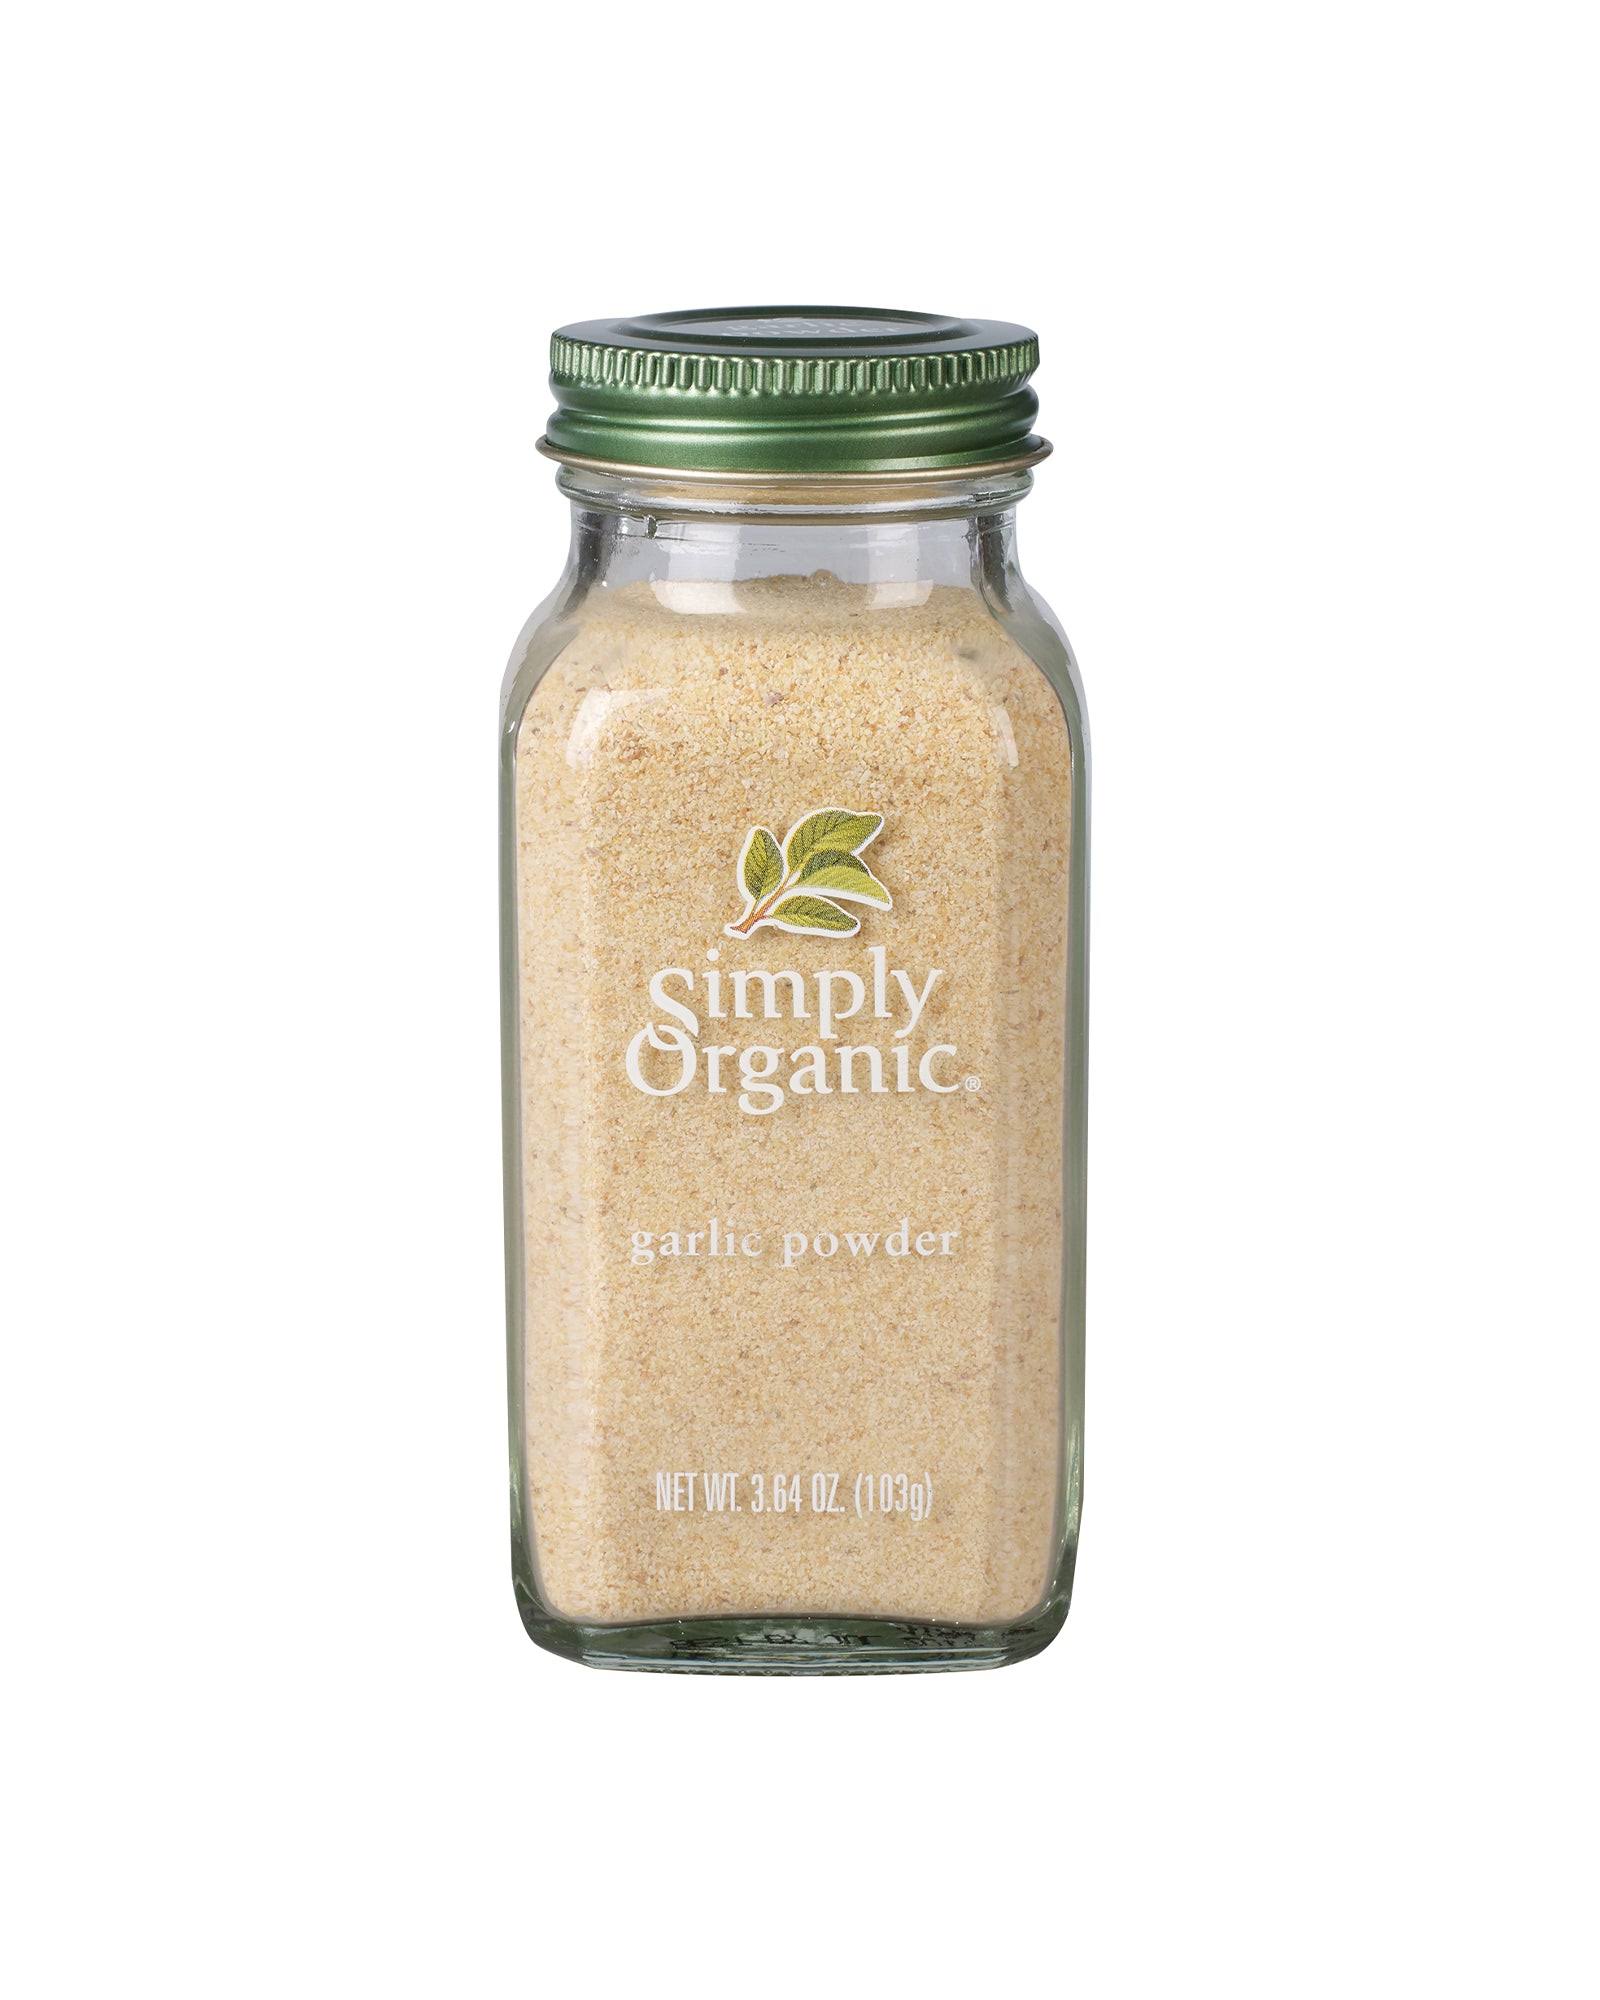 Simply Organic Garlic Powder - 103g